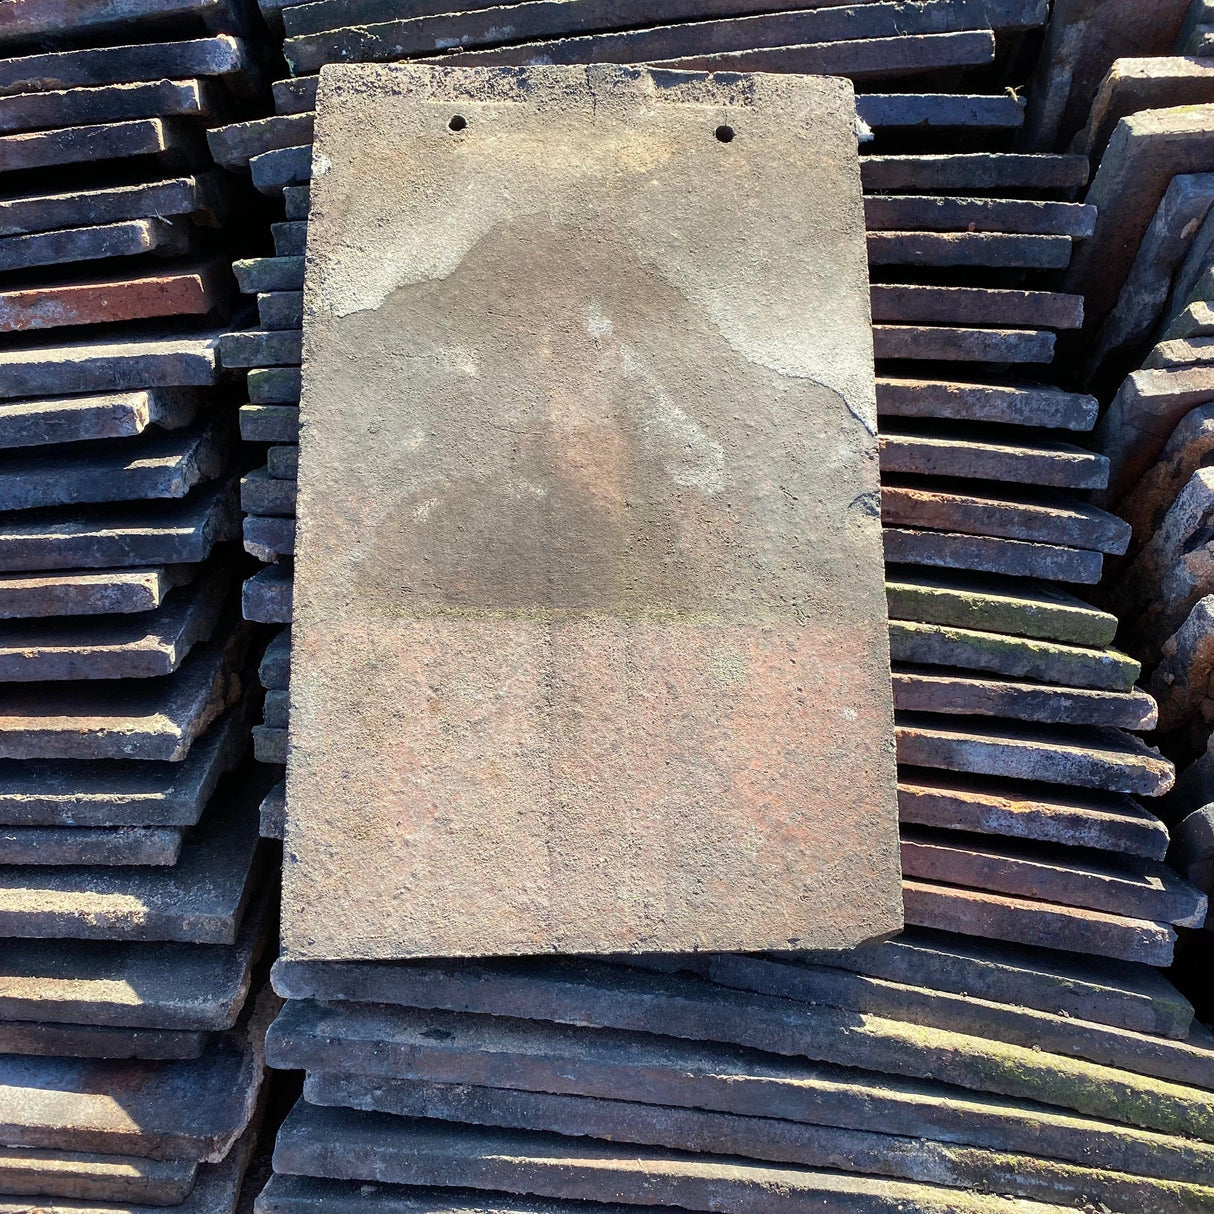 Reclaimed Clay Roof Tiles (Like Rosemary’s) - Reclaimed Brick Company